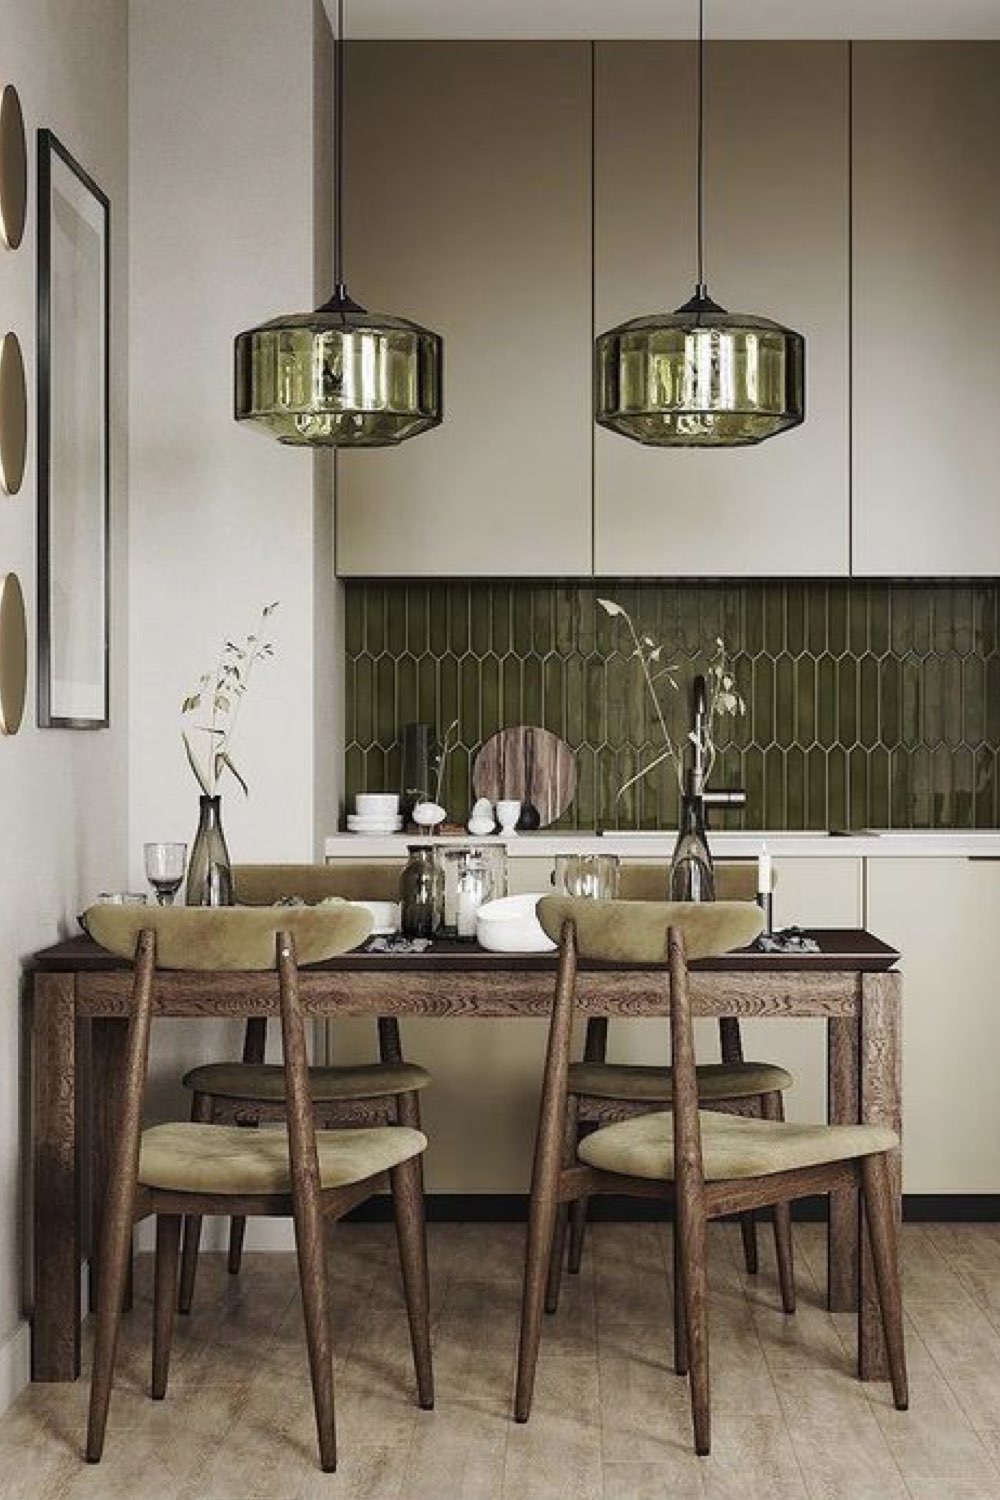 exemple decor salle a manger reussi design chic cuisine ouverte en linéaire petite table 4 personne bois sombre luminaire suspension en vert palette de couleur élégante beige vert sapin